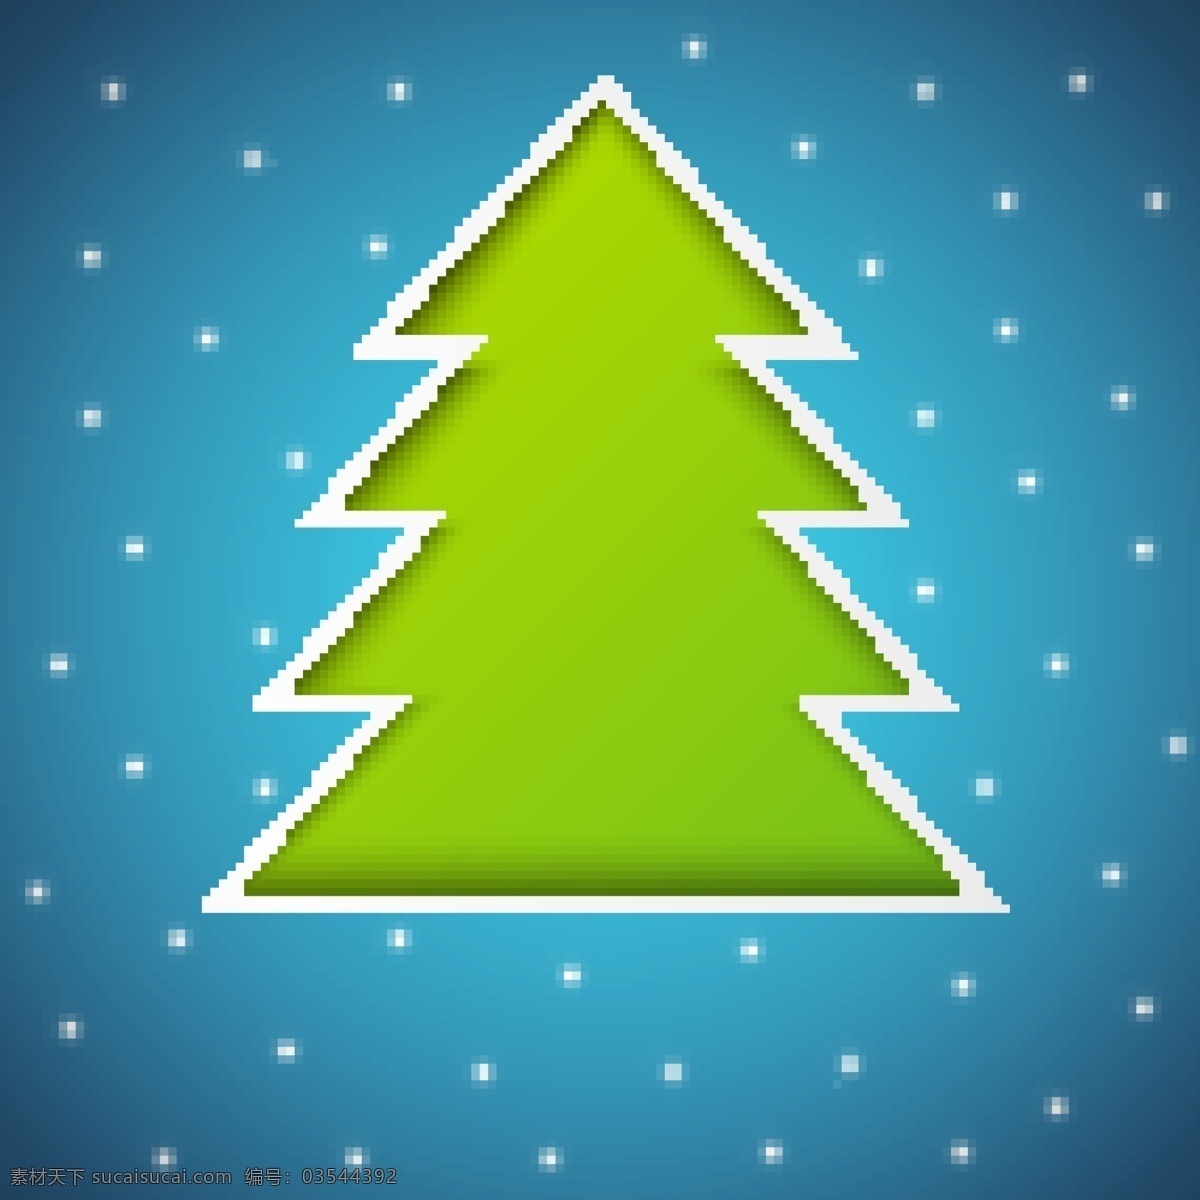 创意 圣诞树 矢量 背景 创意设计 发光 光芒 梦幻 圣诞节 矢量素材 星光 节日素材